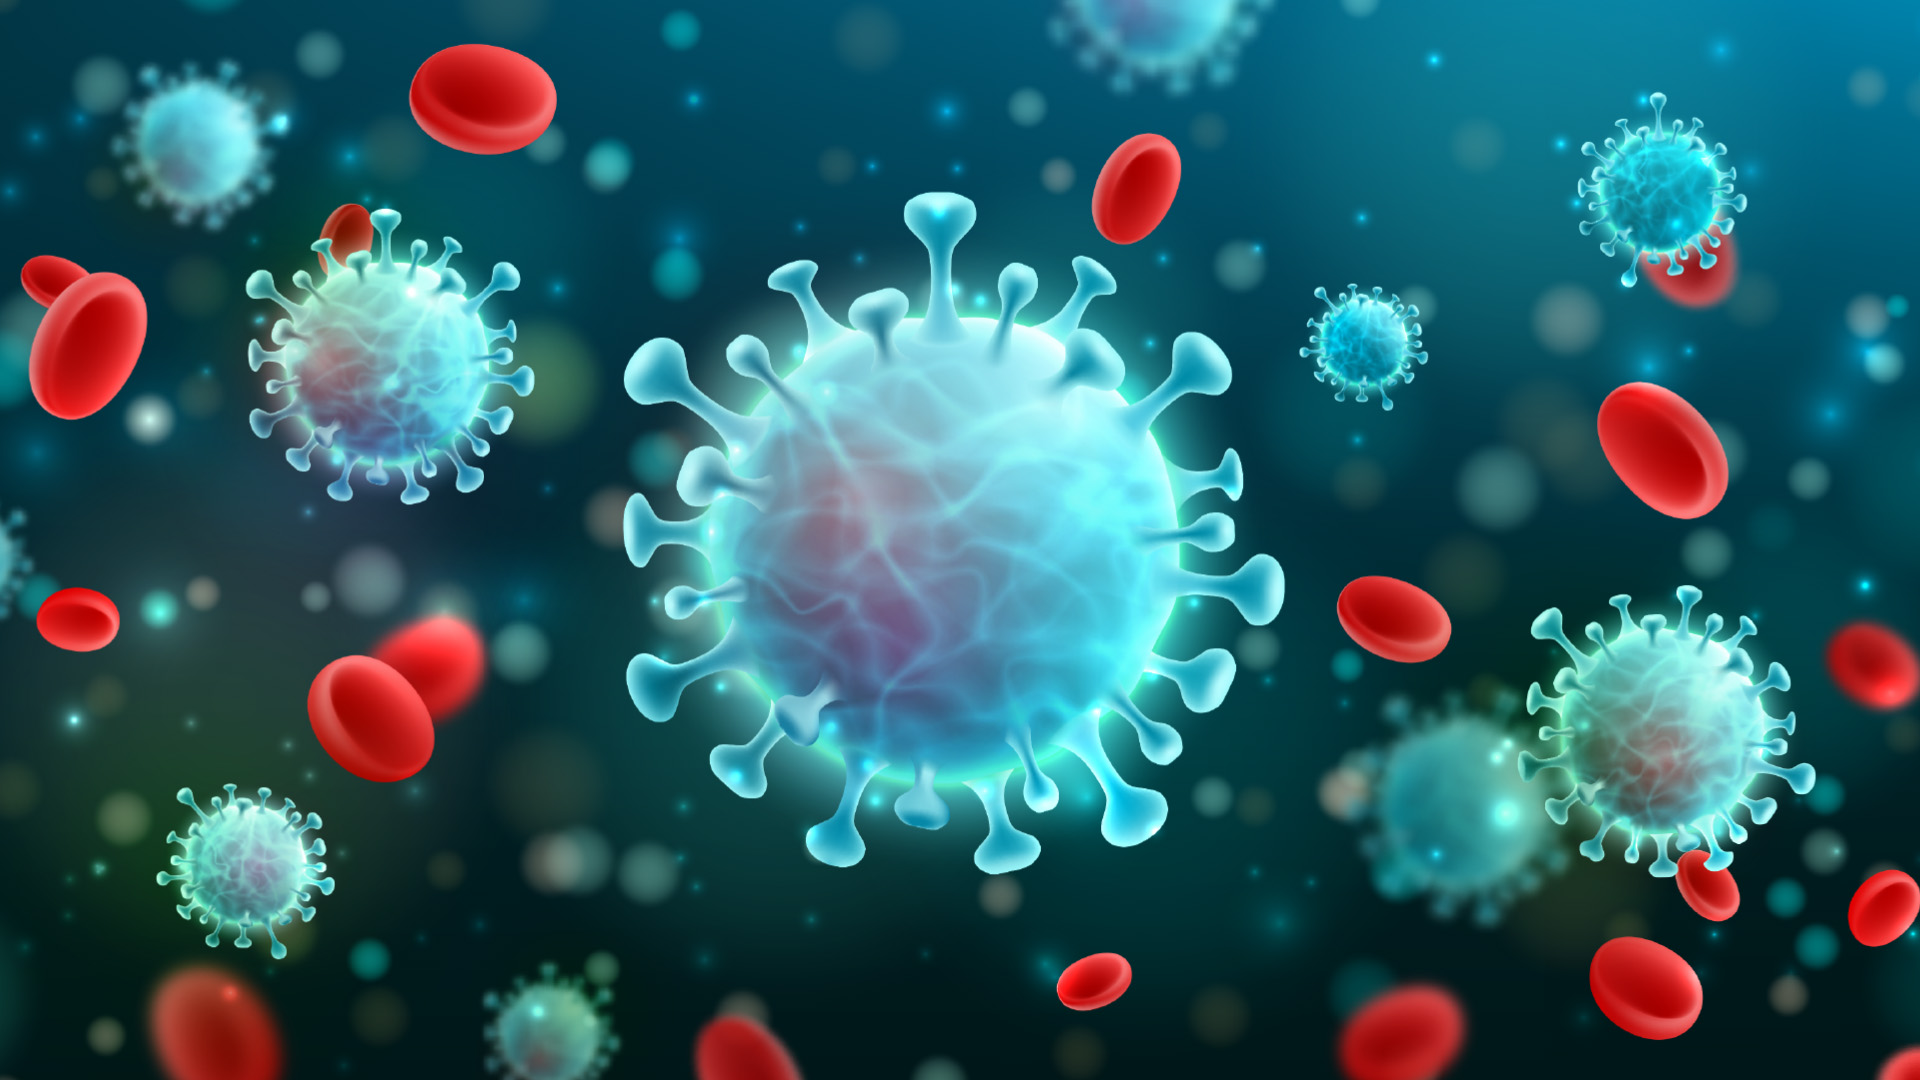 Podľa vedcov sme už pandémiu koronavírusu možno zažili. Stalo sa to v roku 1889